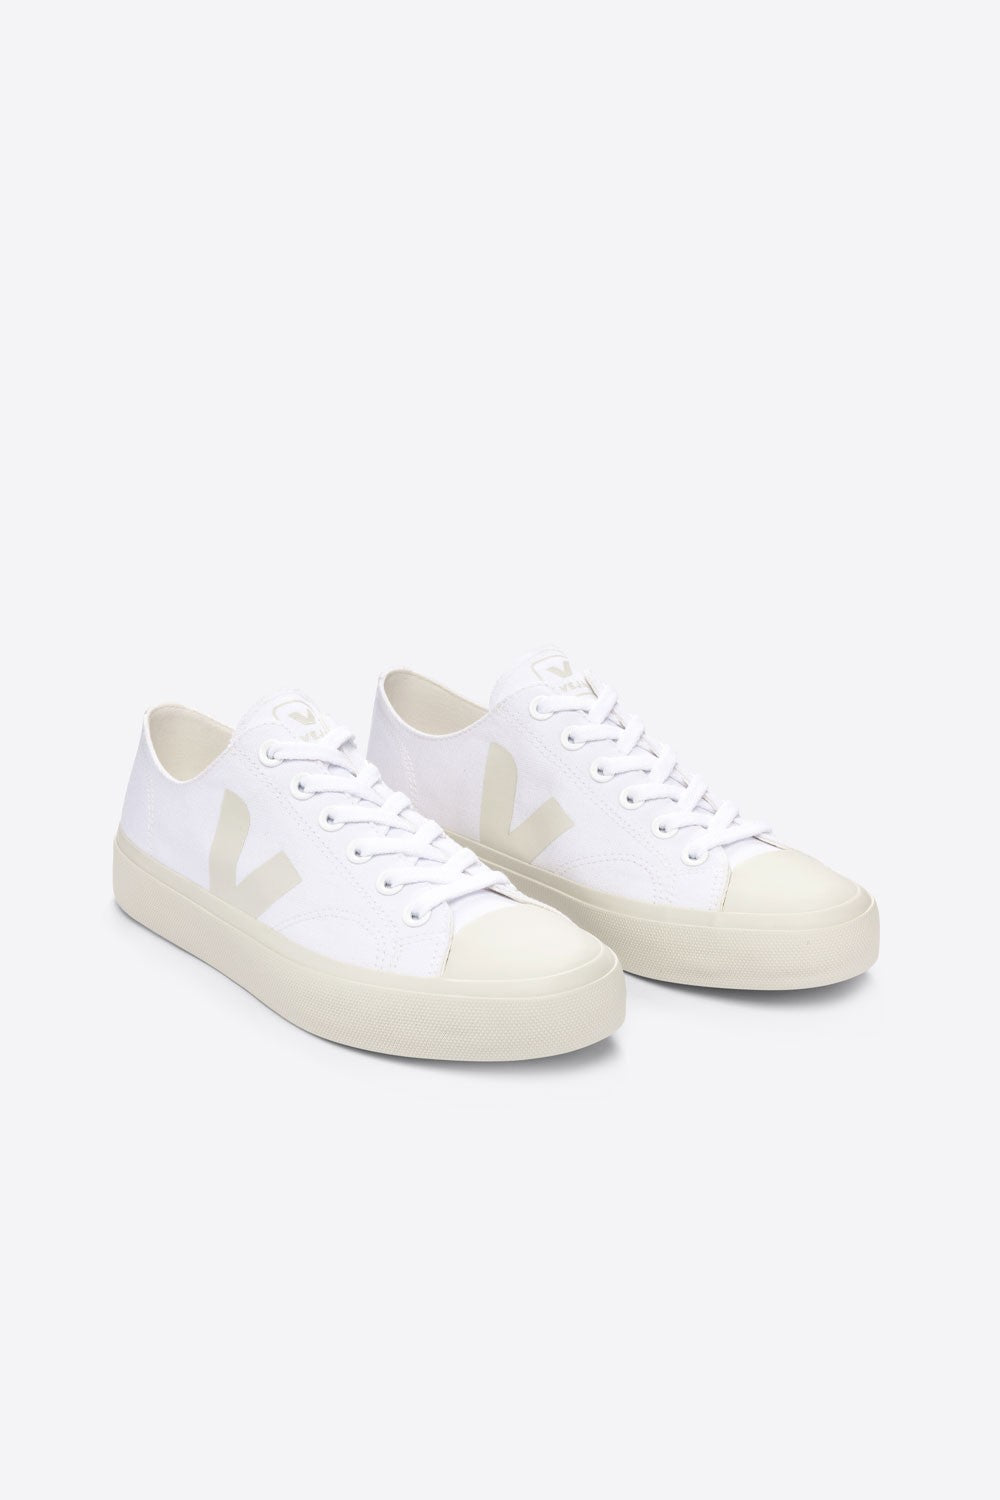 Wata II Low White Pierre Canvas Sneakers